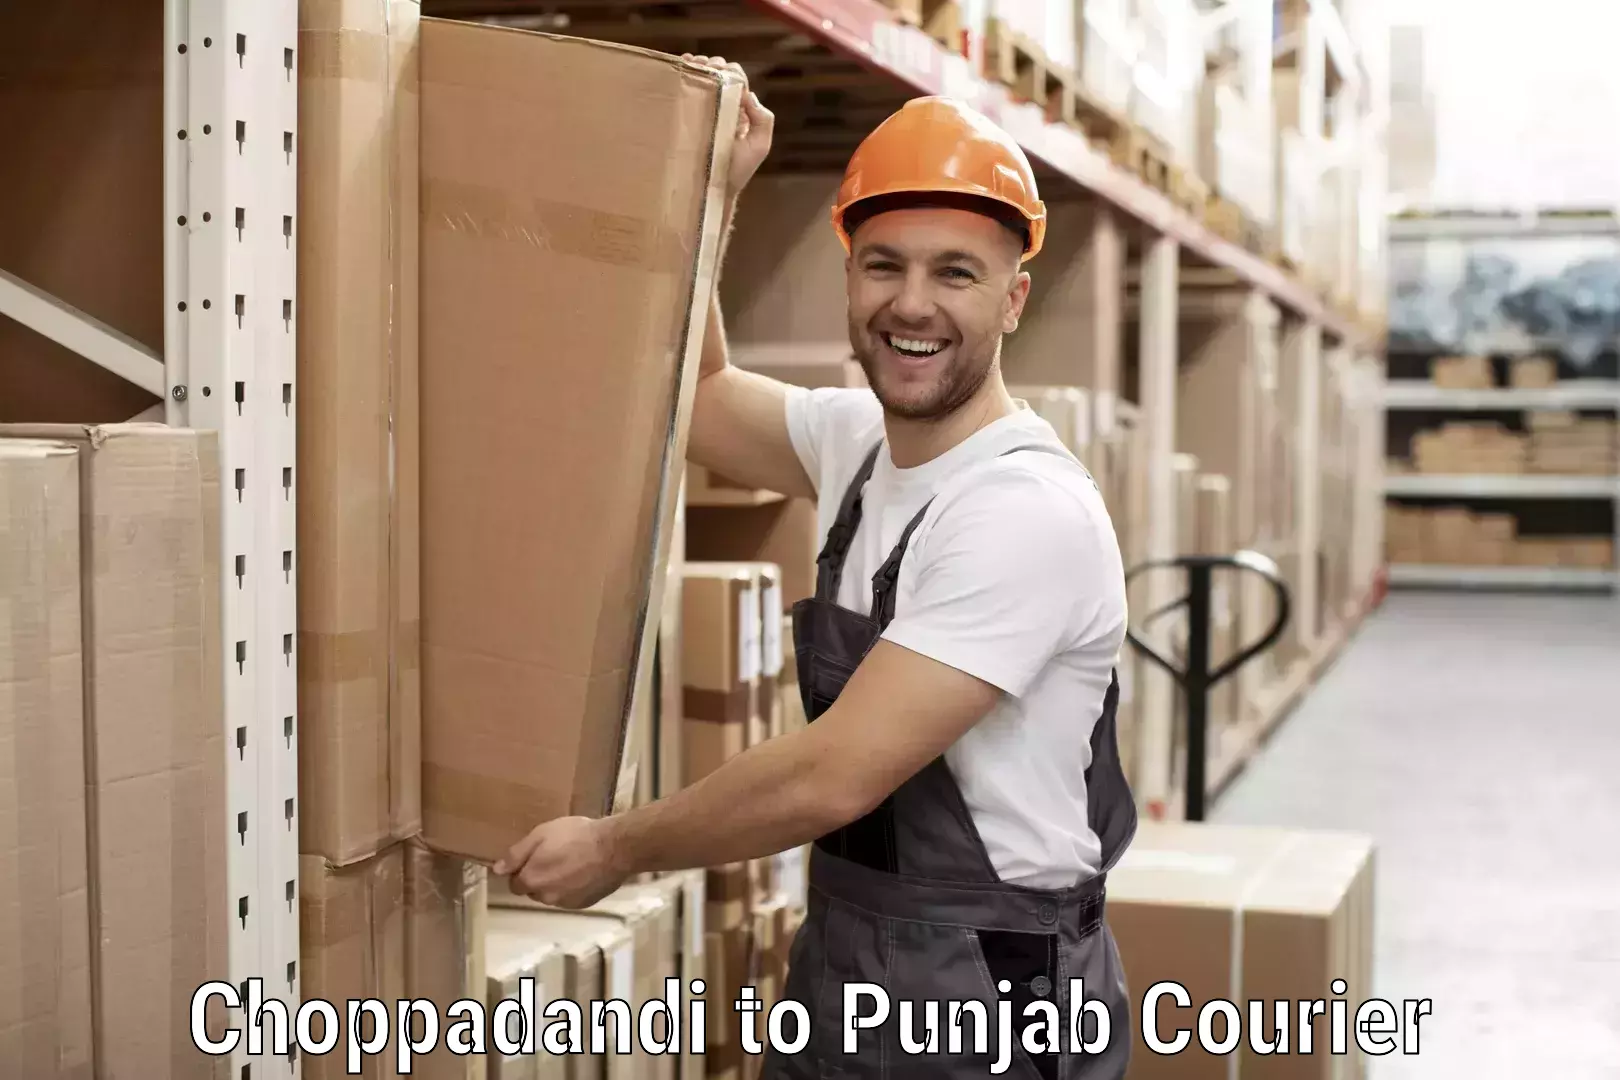 Advanced shipping technology Choppadandi to Punjab